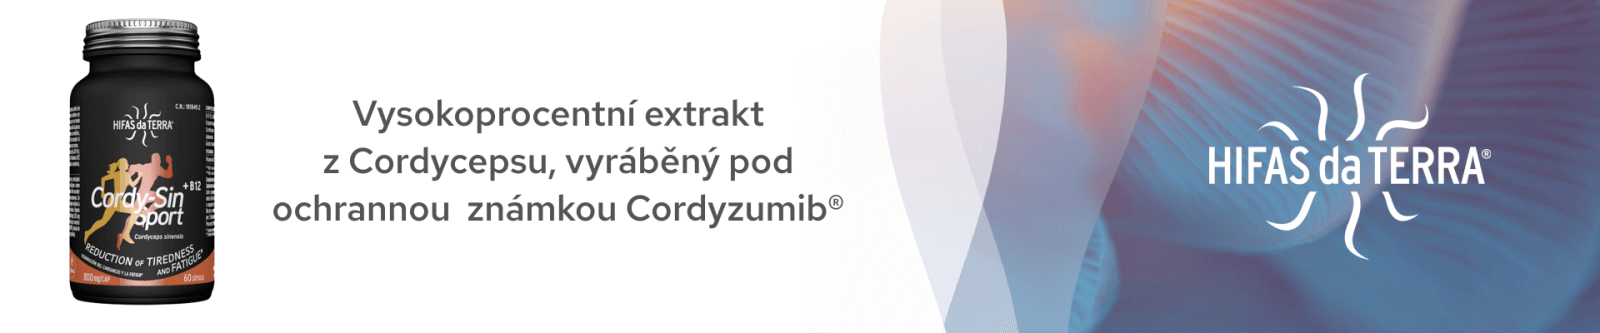 Vysokoprocentní extrakt z Cordycepsu, vyráběný pod ochranou známkou Cordyzumib.